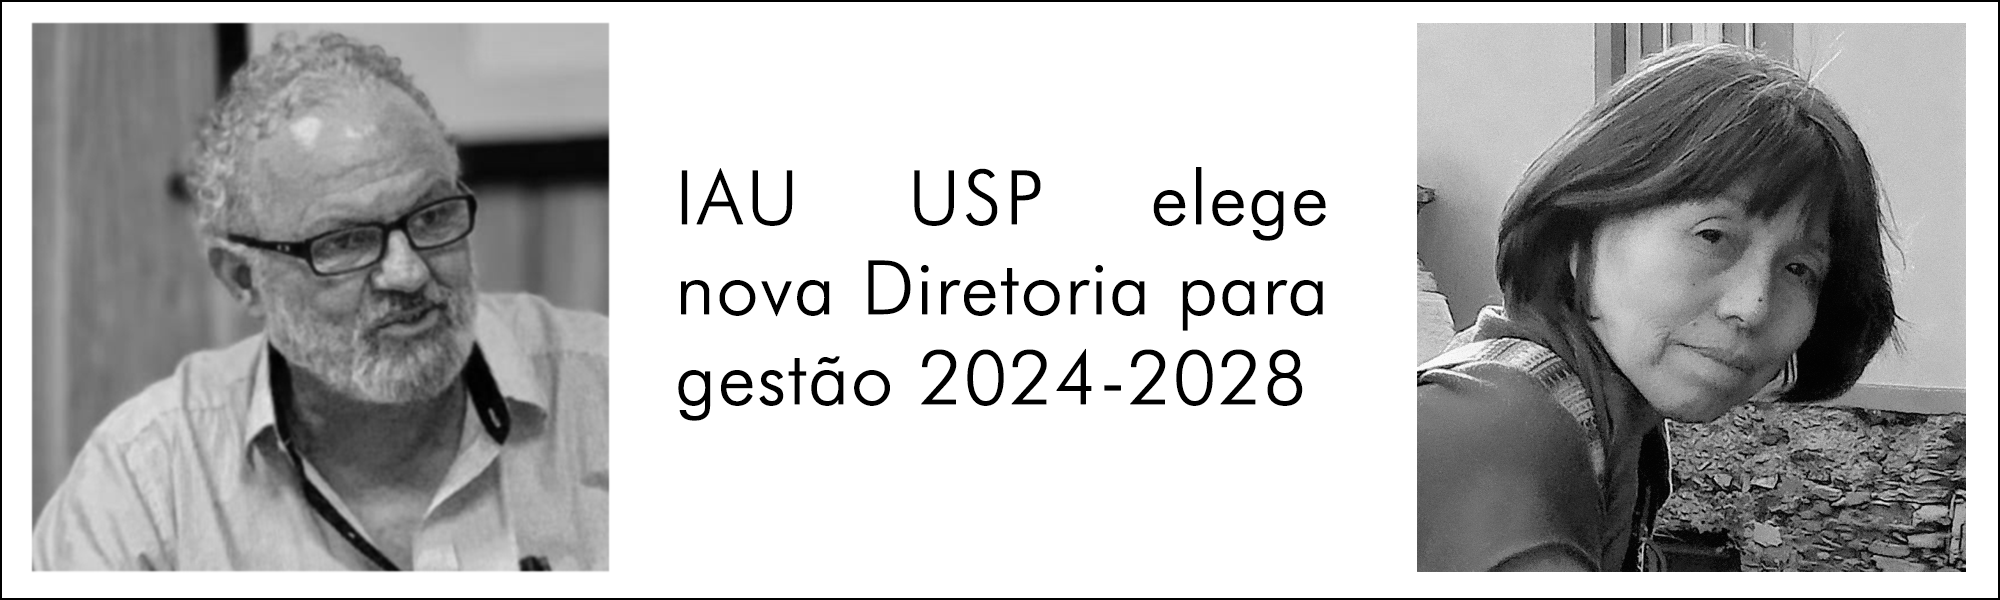 IAU USP elege nova diretoria para gestão 2024-2028